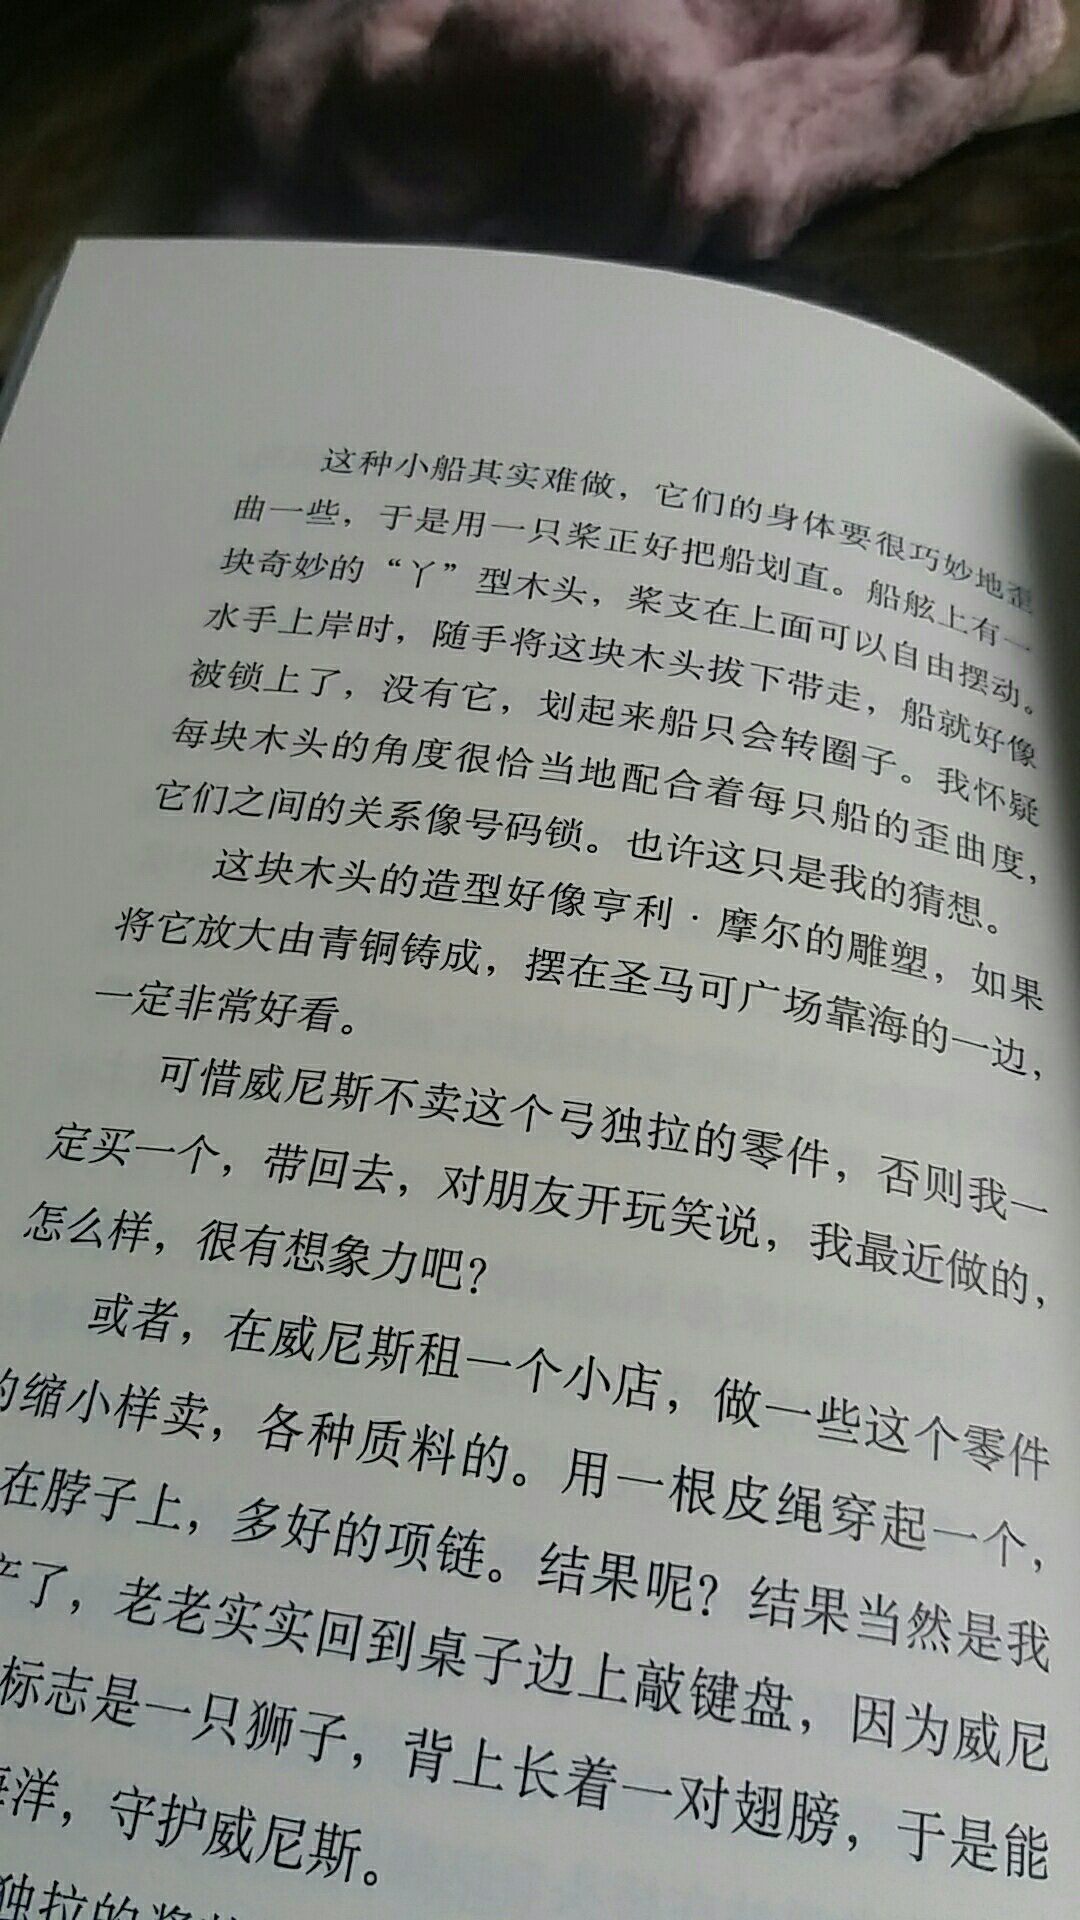 不愧是中华书局的出版物，很具有书的质感，字体看上去很舒服，排版印刷一流，赞